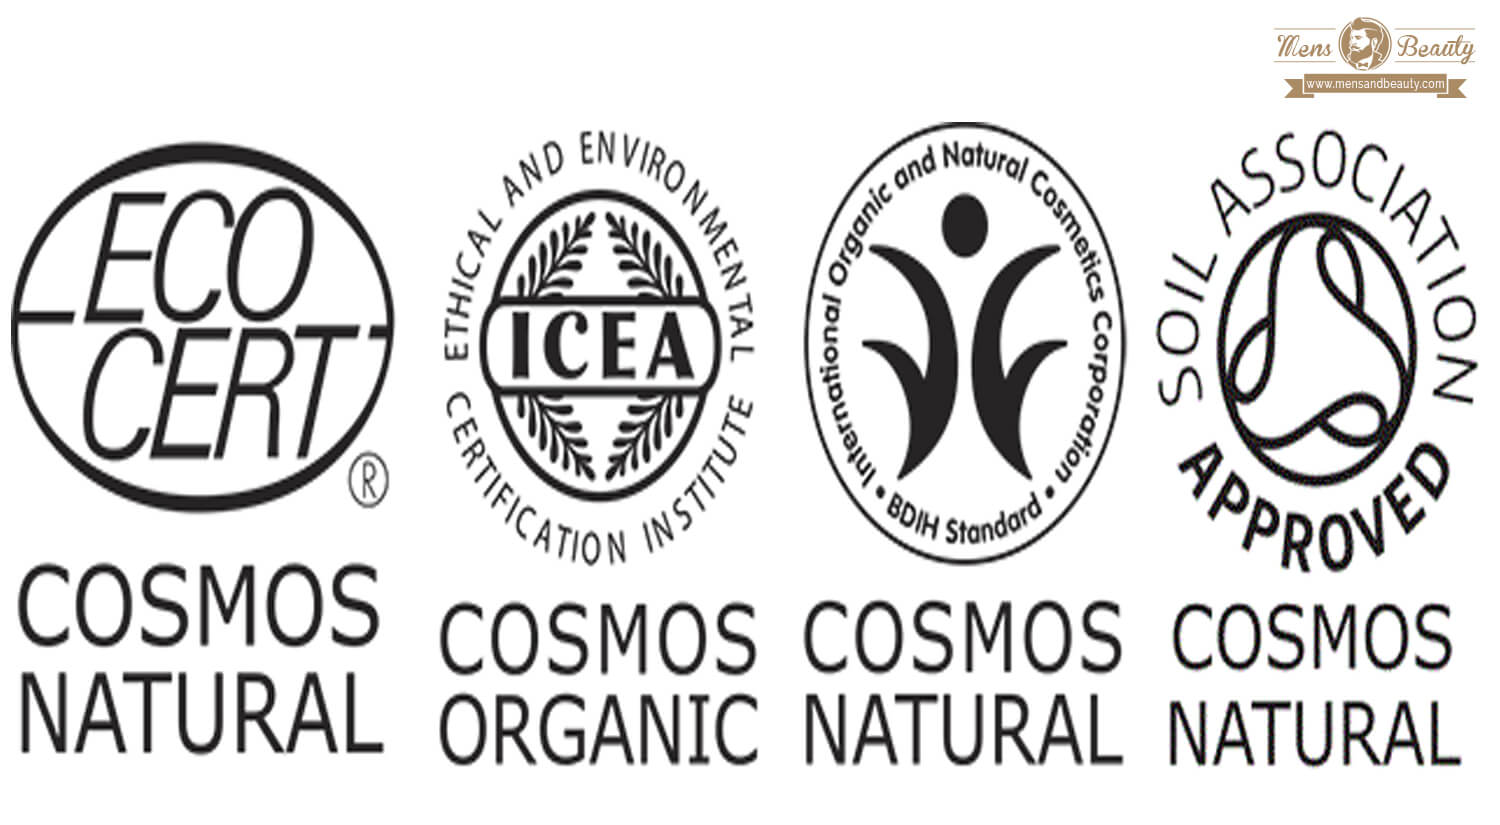 cosmetica natural masculina sellos certificaciones productos cosmeticos cosmos